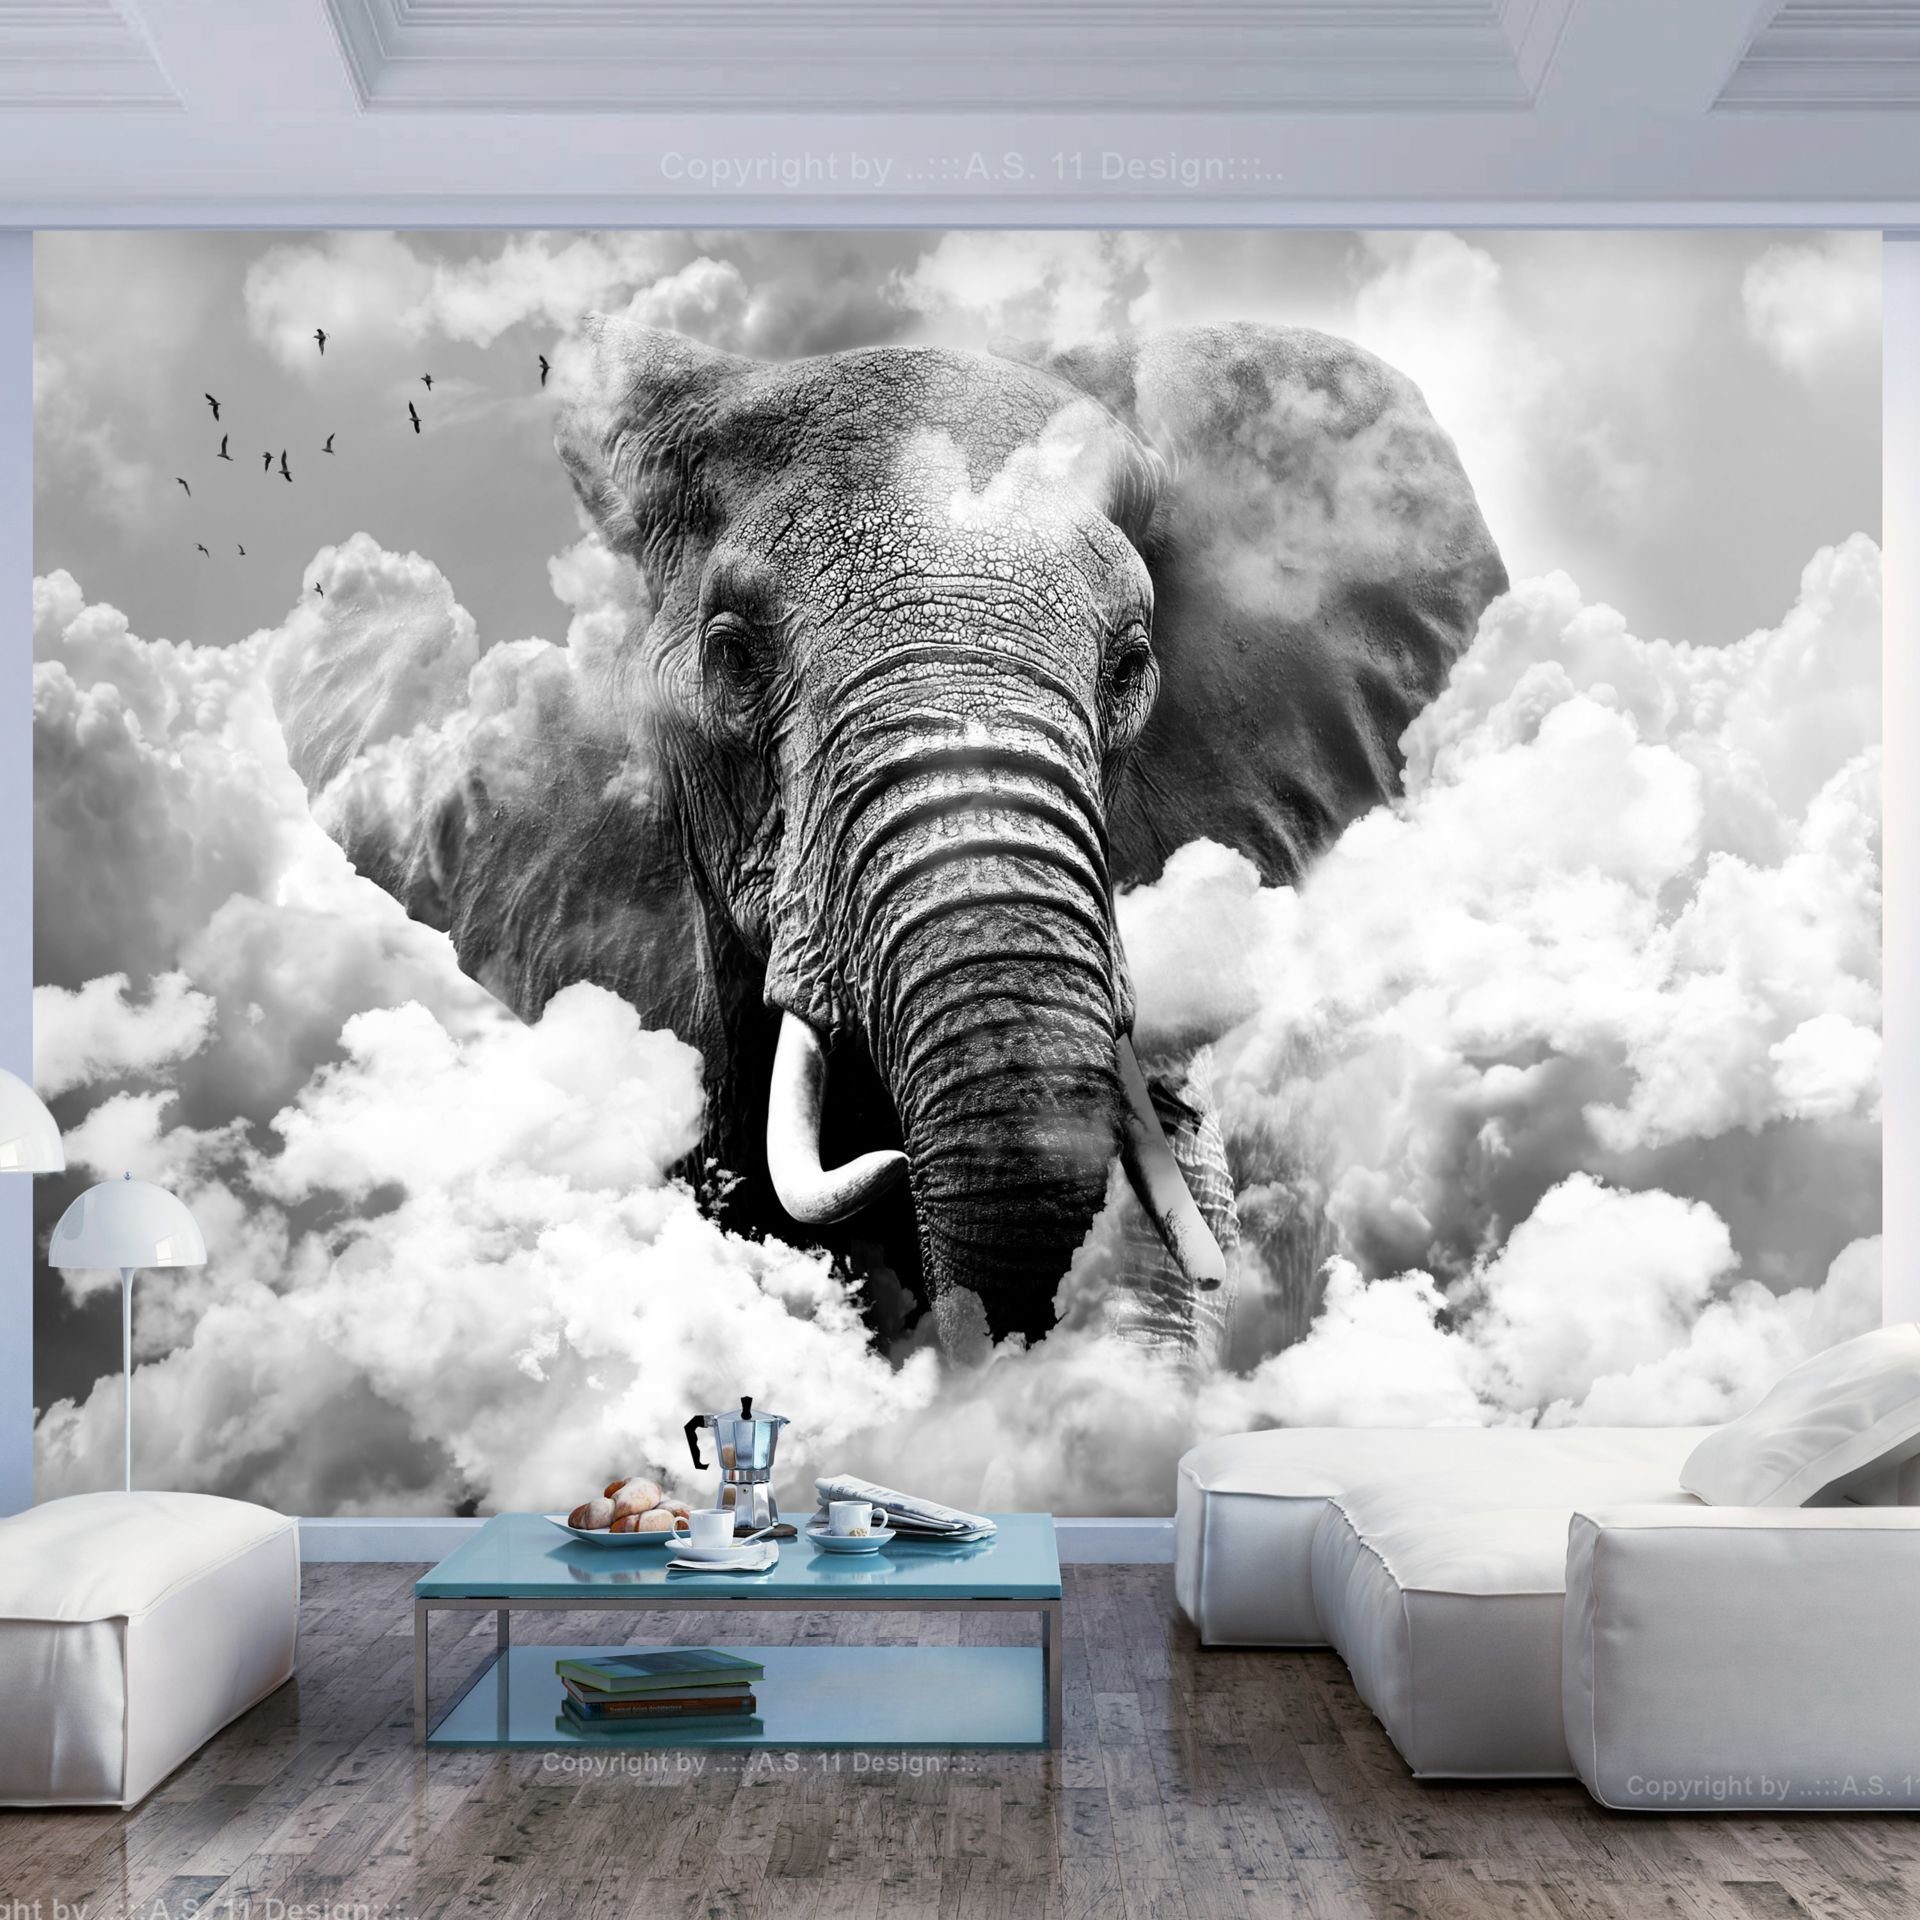 Tapete KUNSTLOFT (Black m, halb-matt, Design White) and lichtbeständige Vliestapete in Clouds 1x0.7 Elephant the